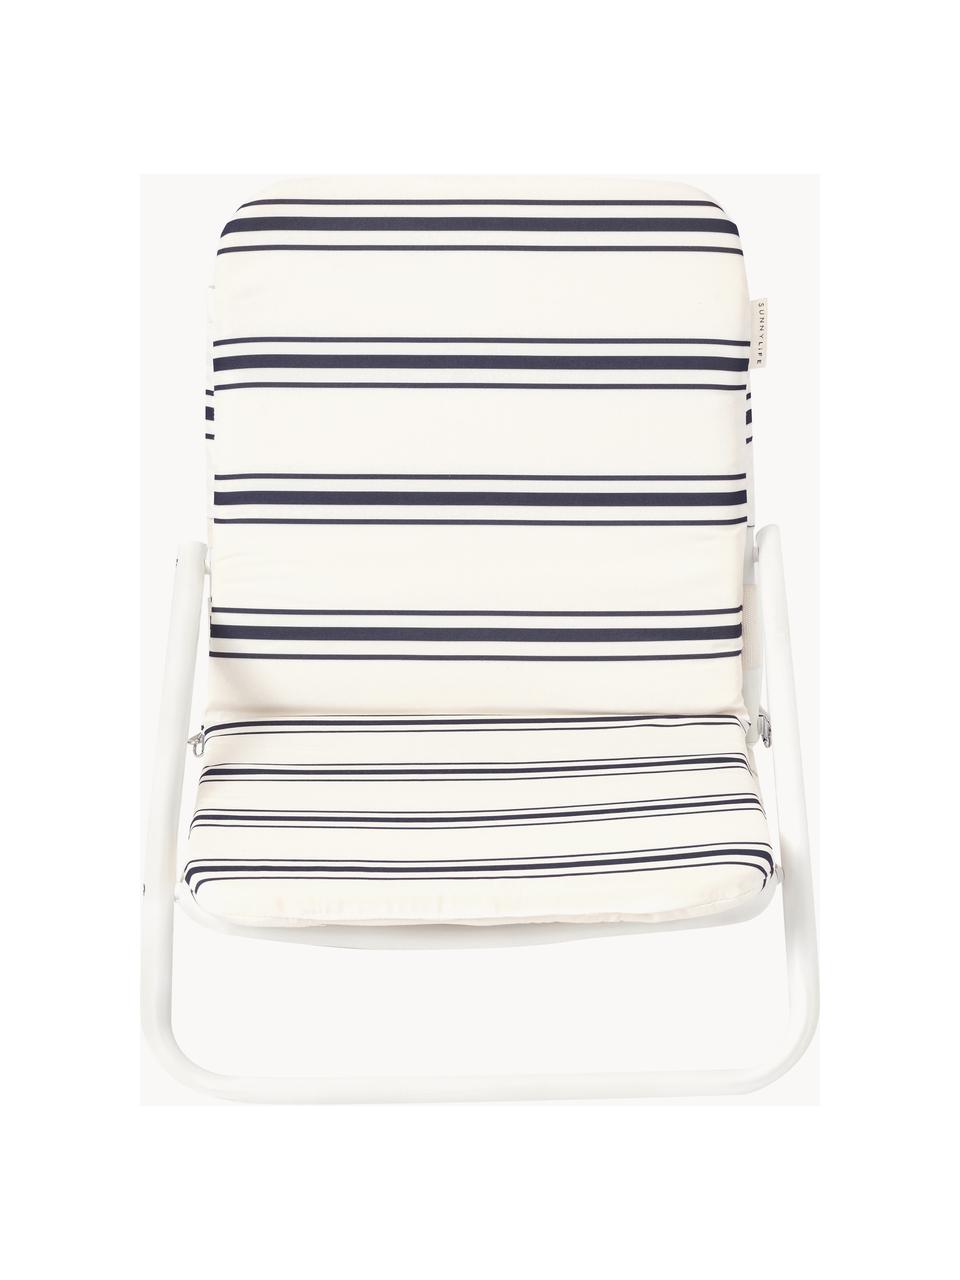 Chaise de plage rembourrée Casa Fes, Tissu blanc cassé, noir, larg. 52 x prof. 63 cm